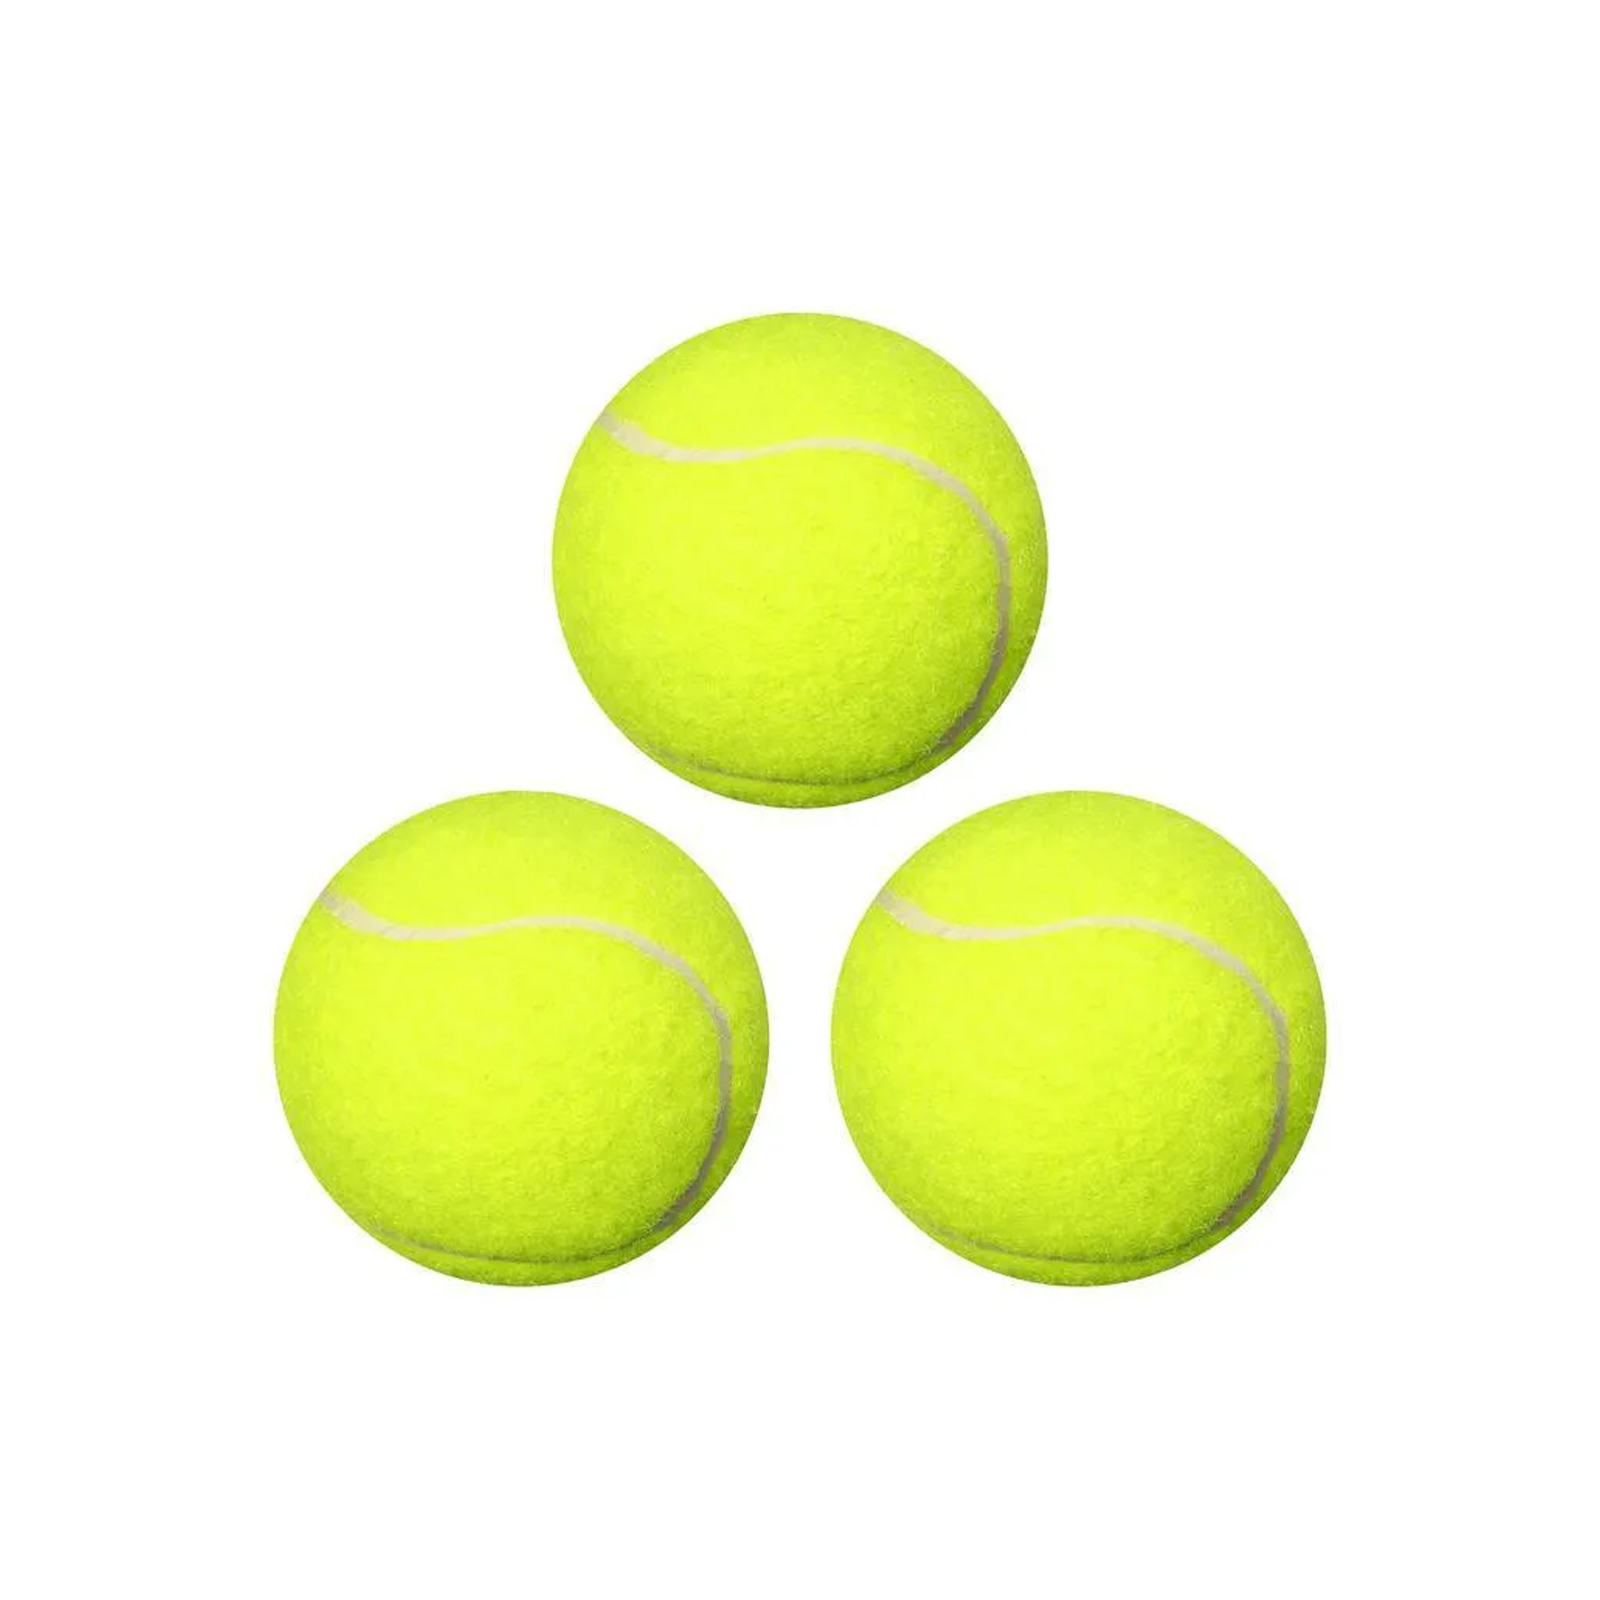 фото Теннисный мяч для активного отдыха, 3 шт wellywell